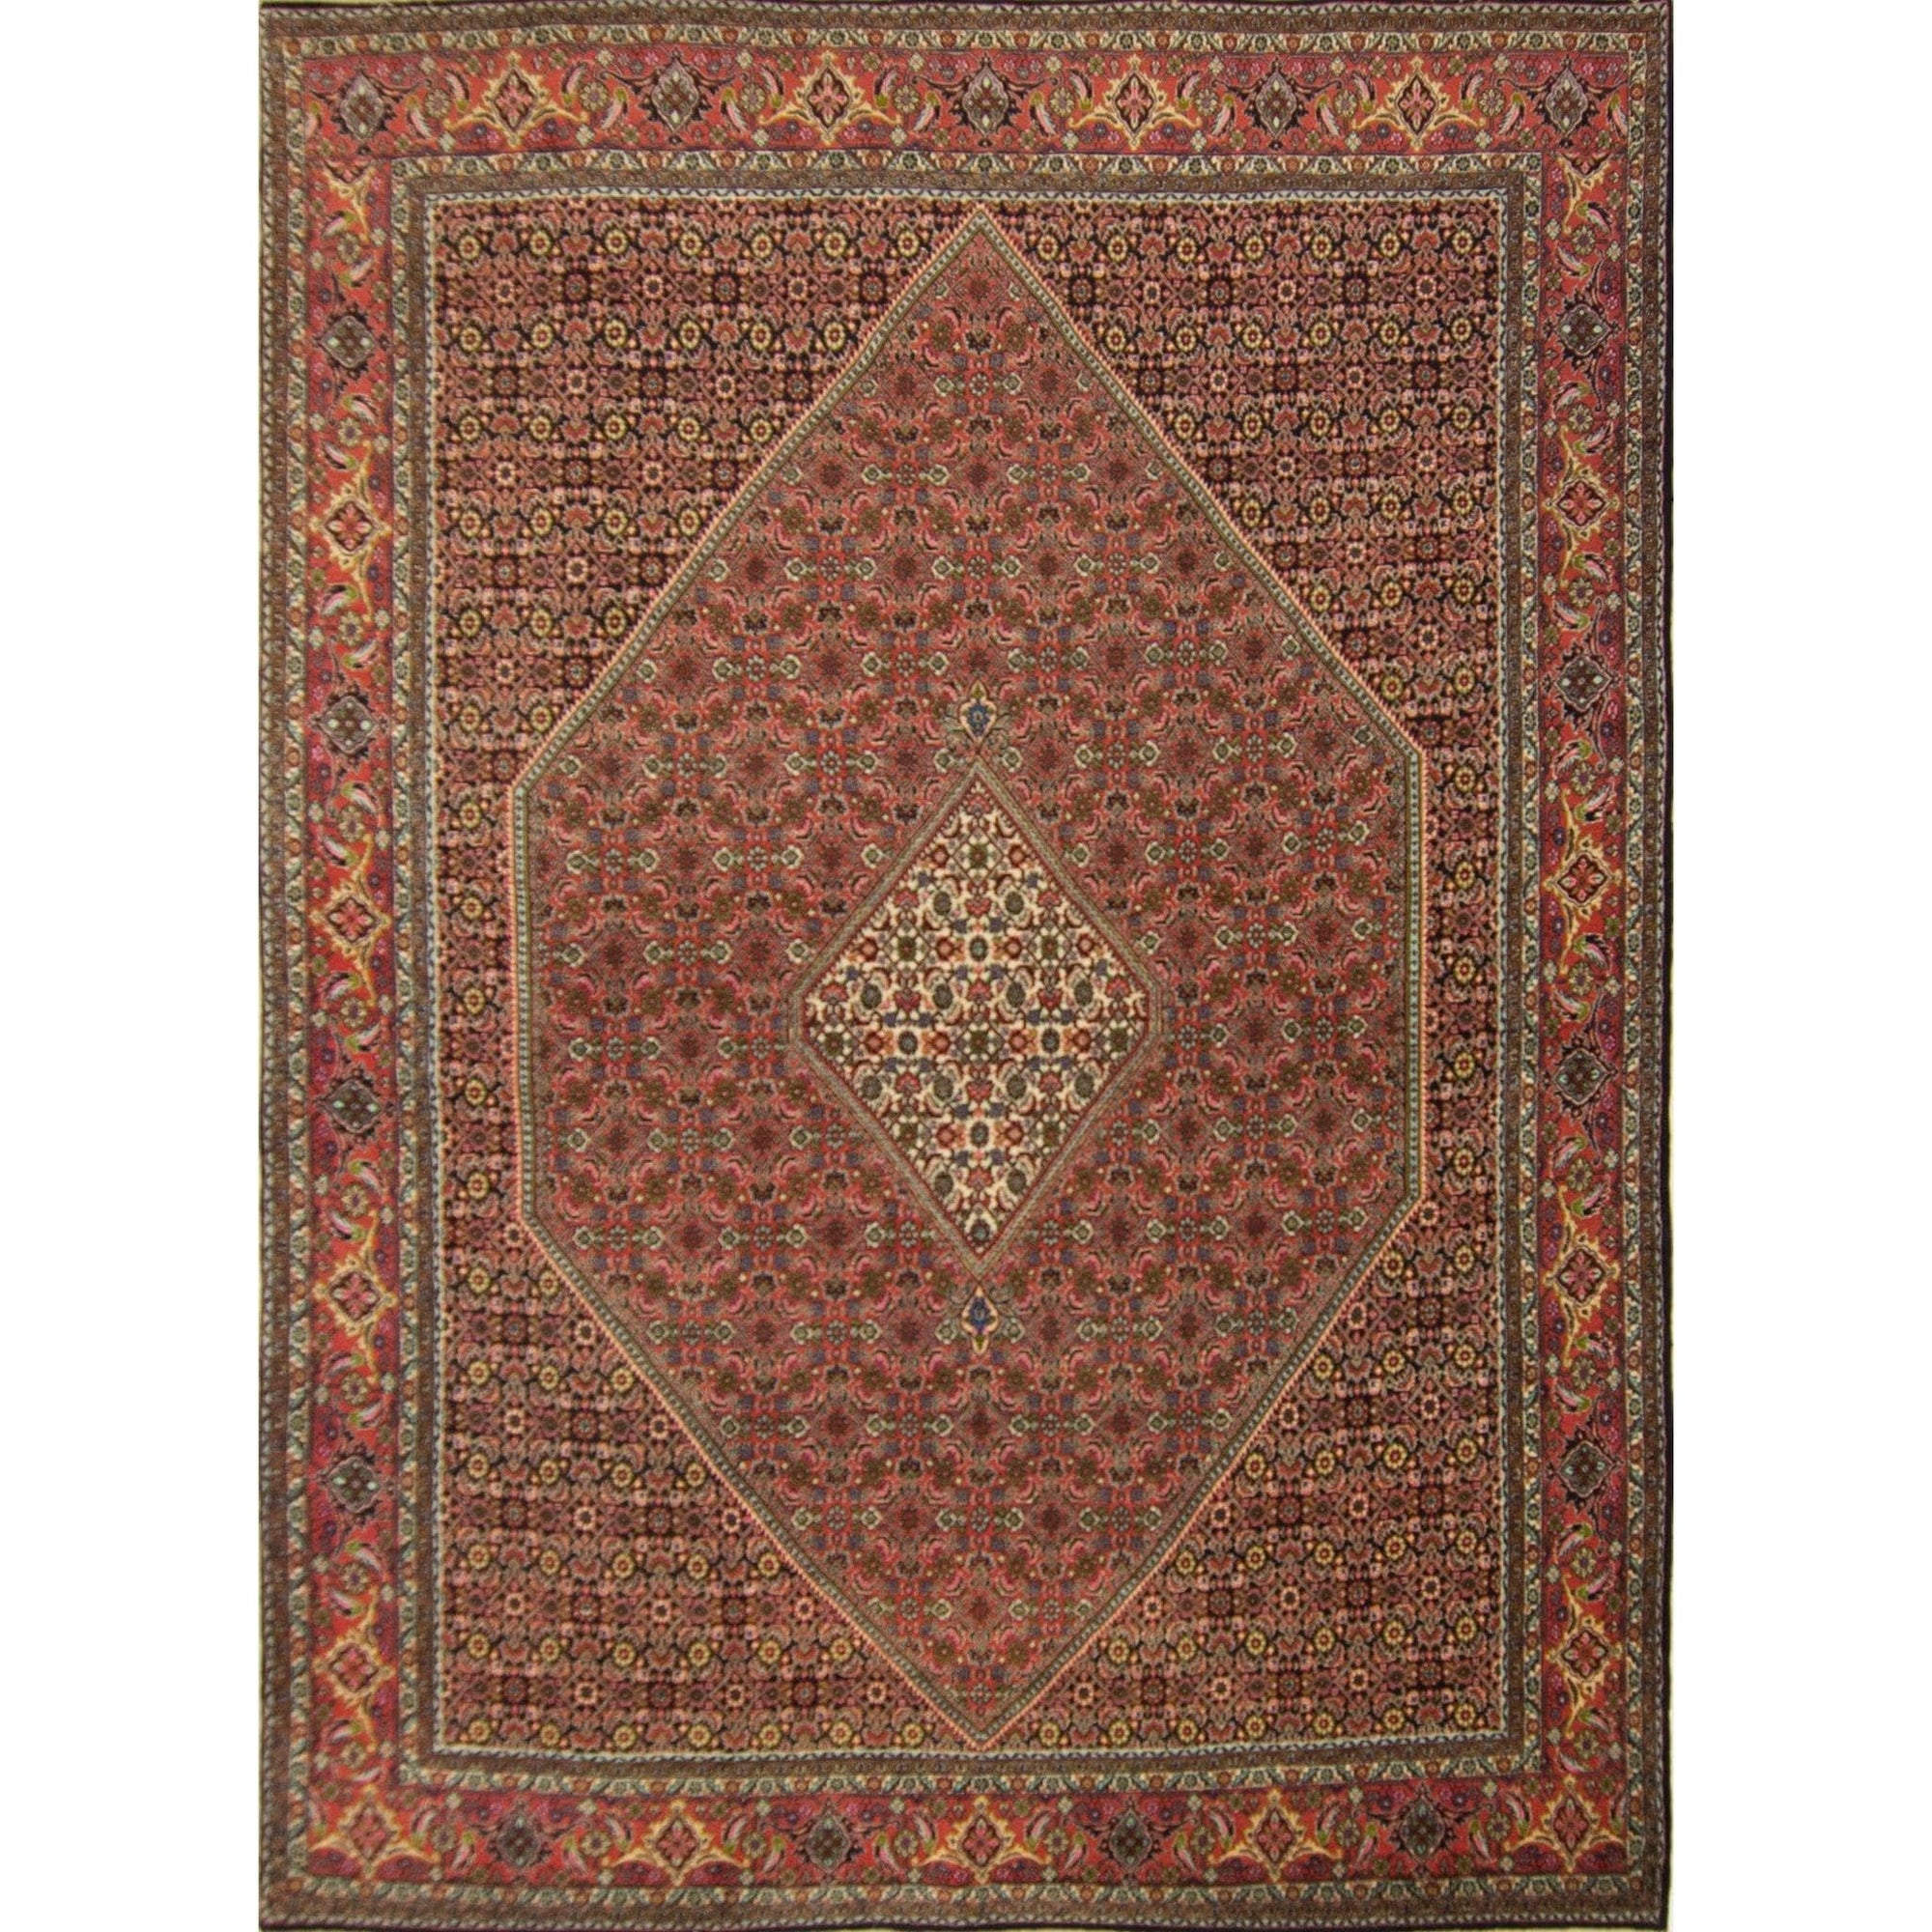 Super Fine Hand-knotted Persian Wool Bijar Rug 252cm x 352cm